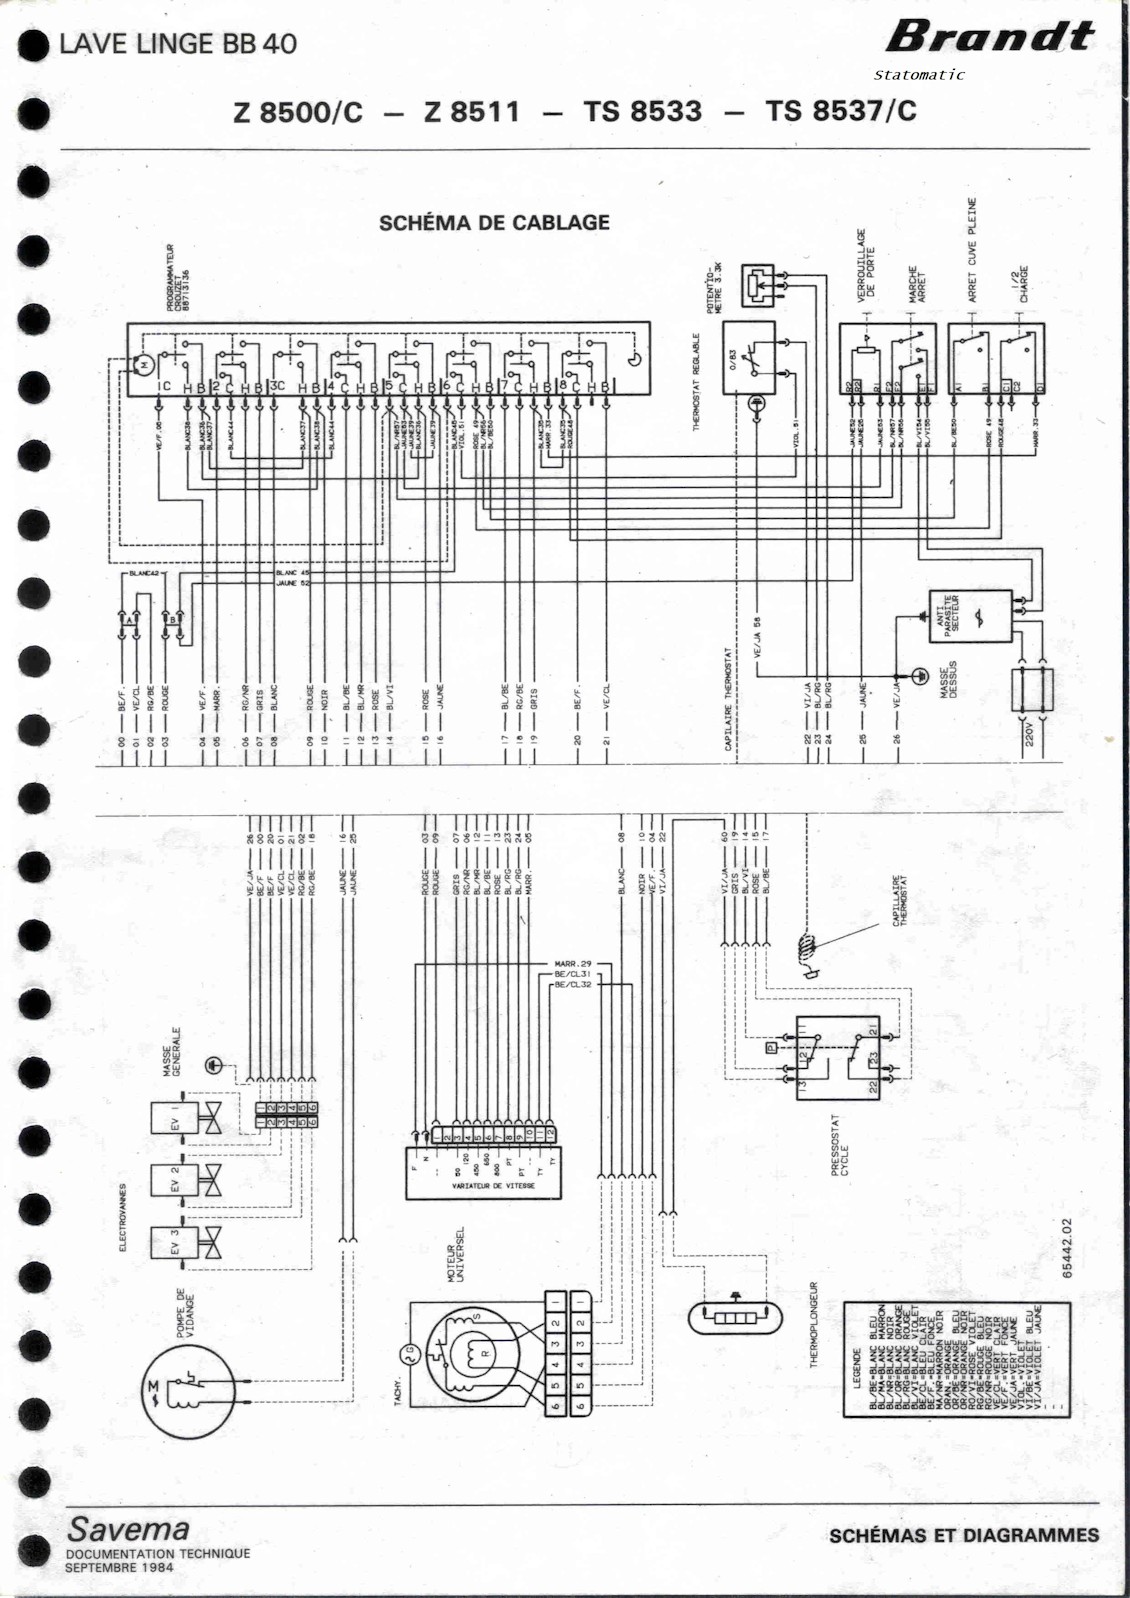 Machine à laver Brandt BB40 Z8500/C, Z8511, TS8533, TS8537/C.